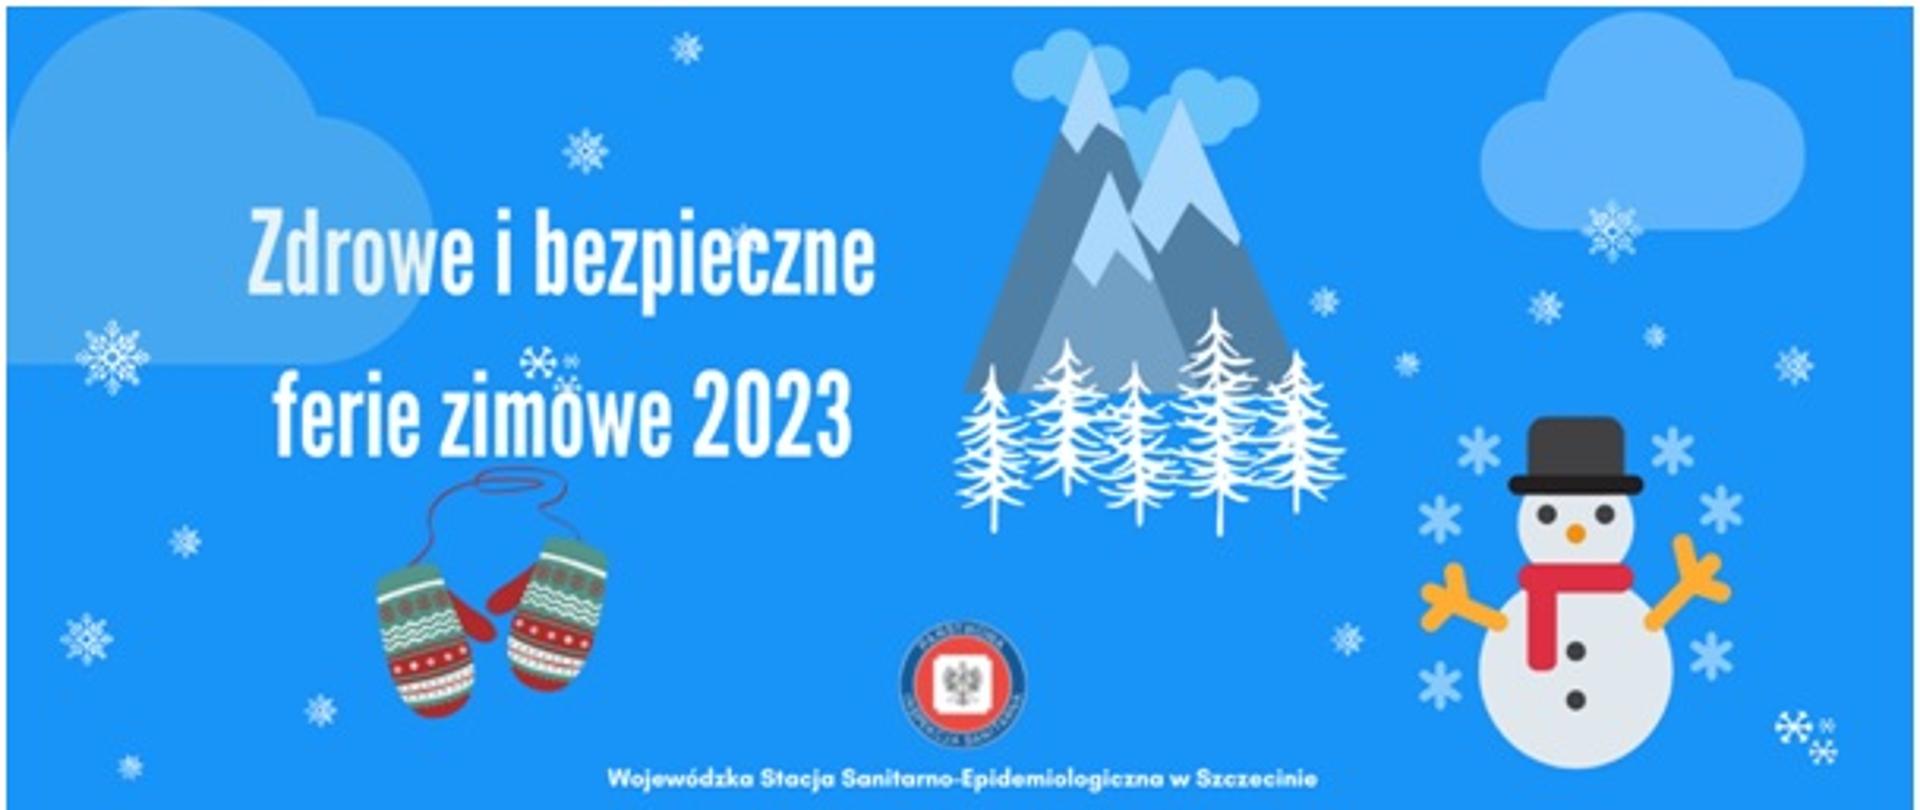 Zdrowe i bezpieczne ferie zimowe 2023